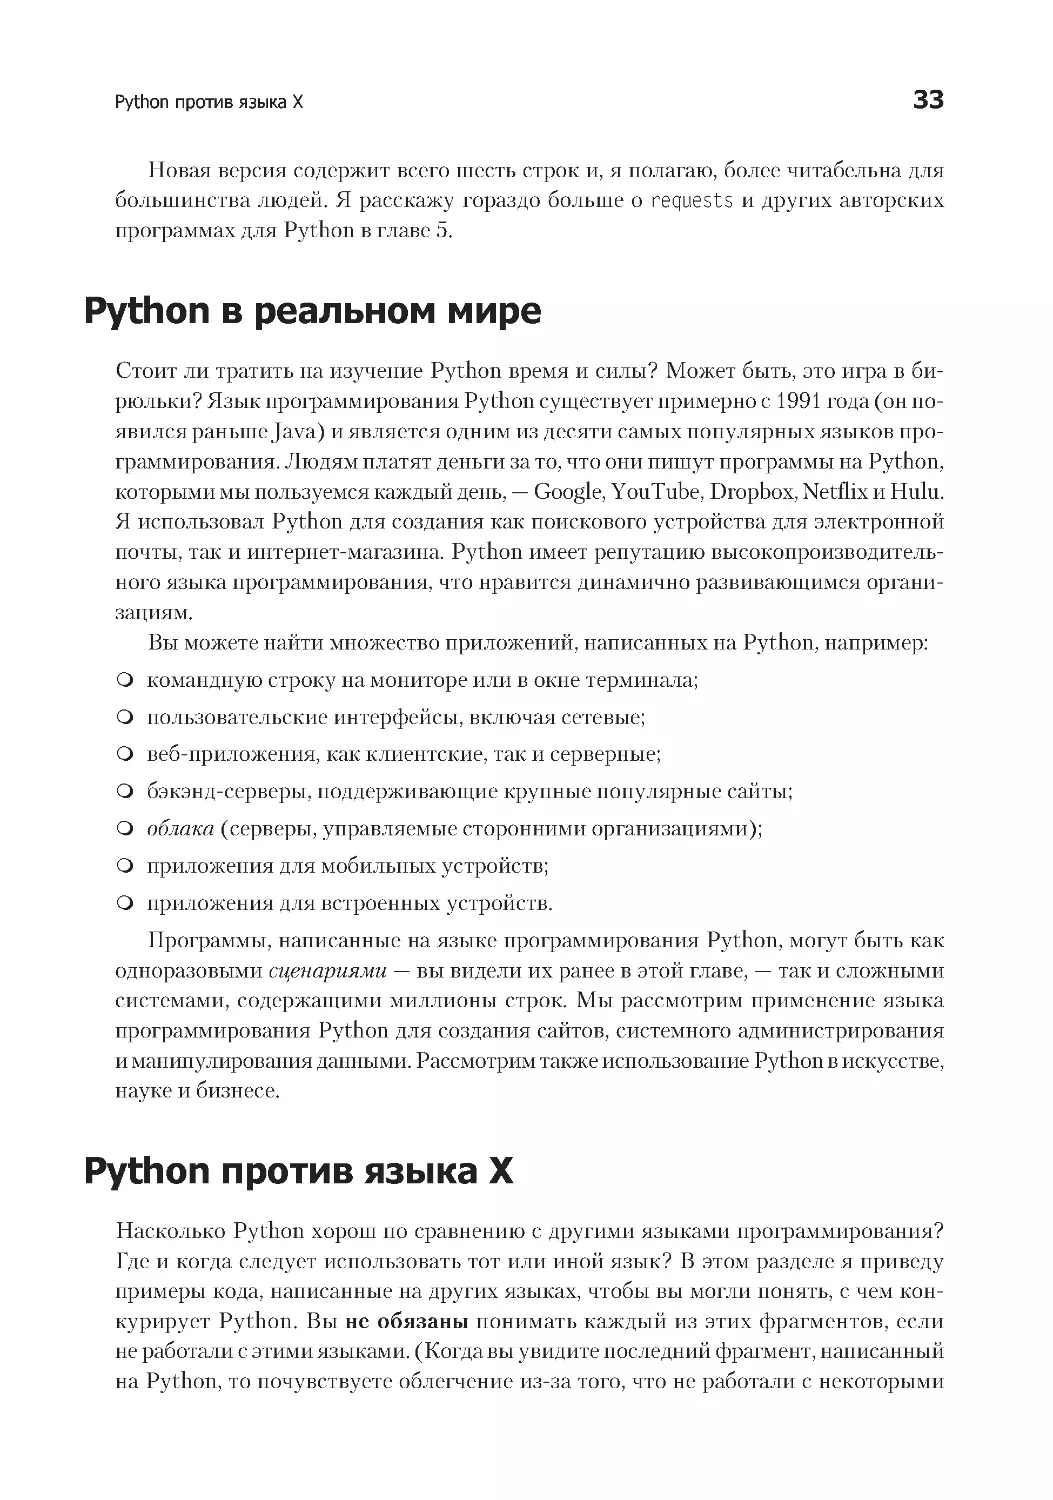 Python в реальном мире
Python против языка Х